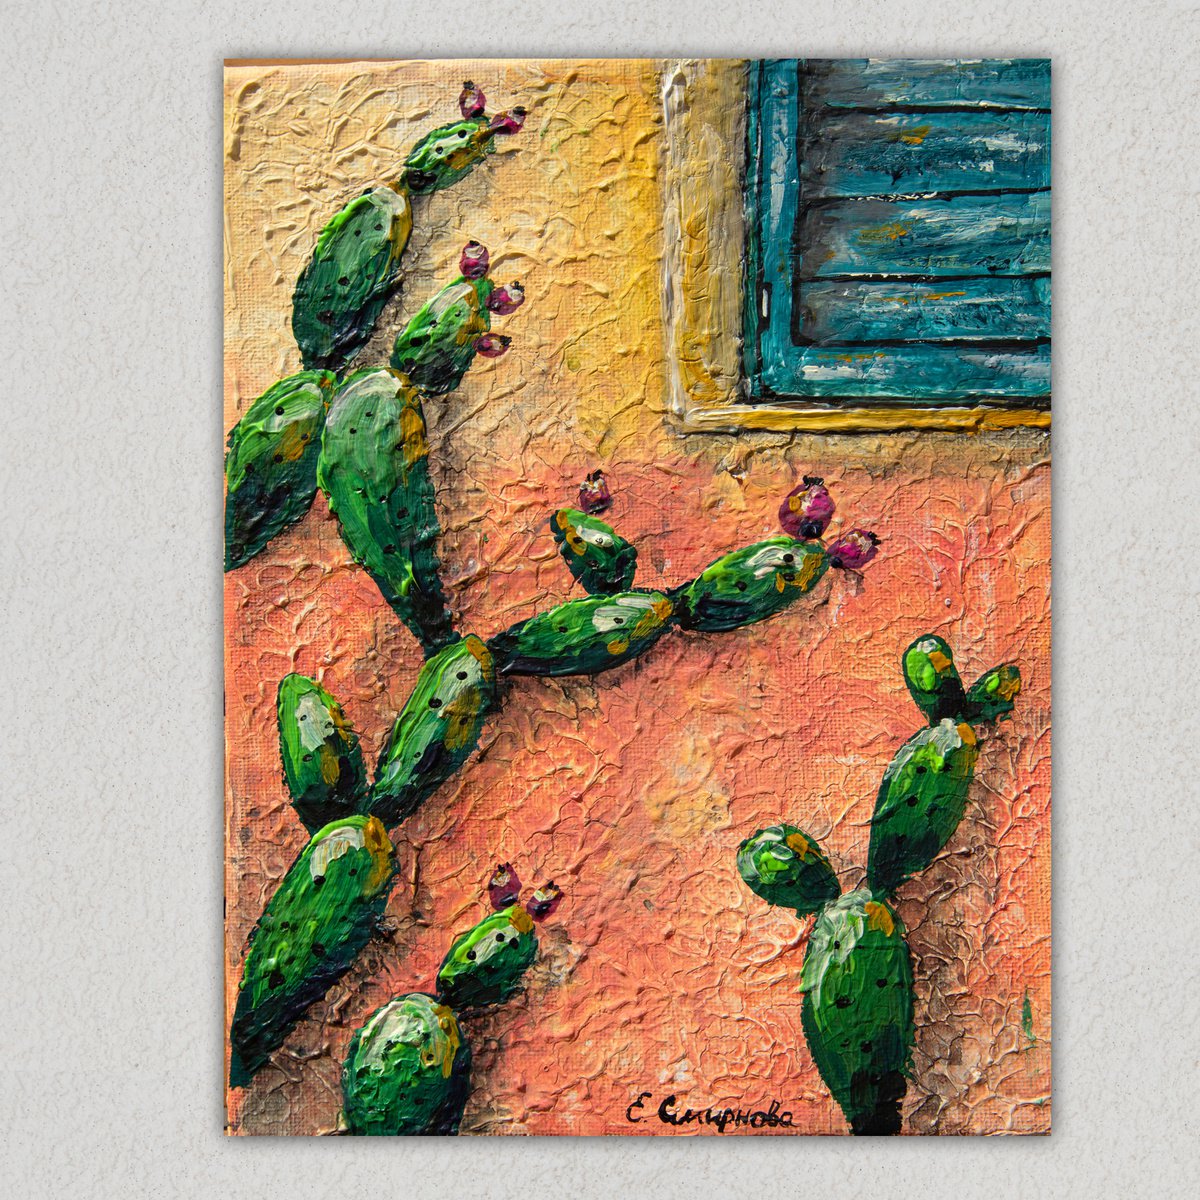 Sicilian Cactus by Evgenia Smirnova